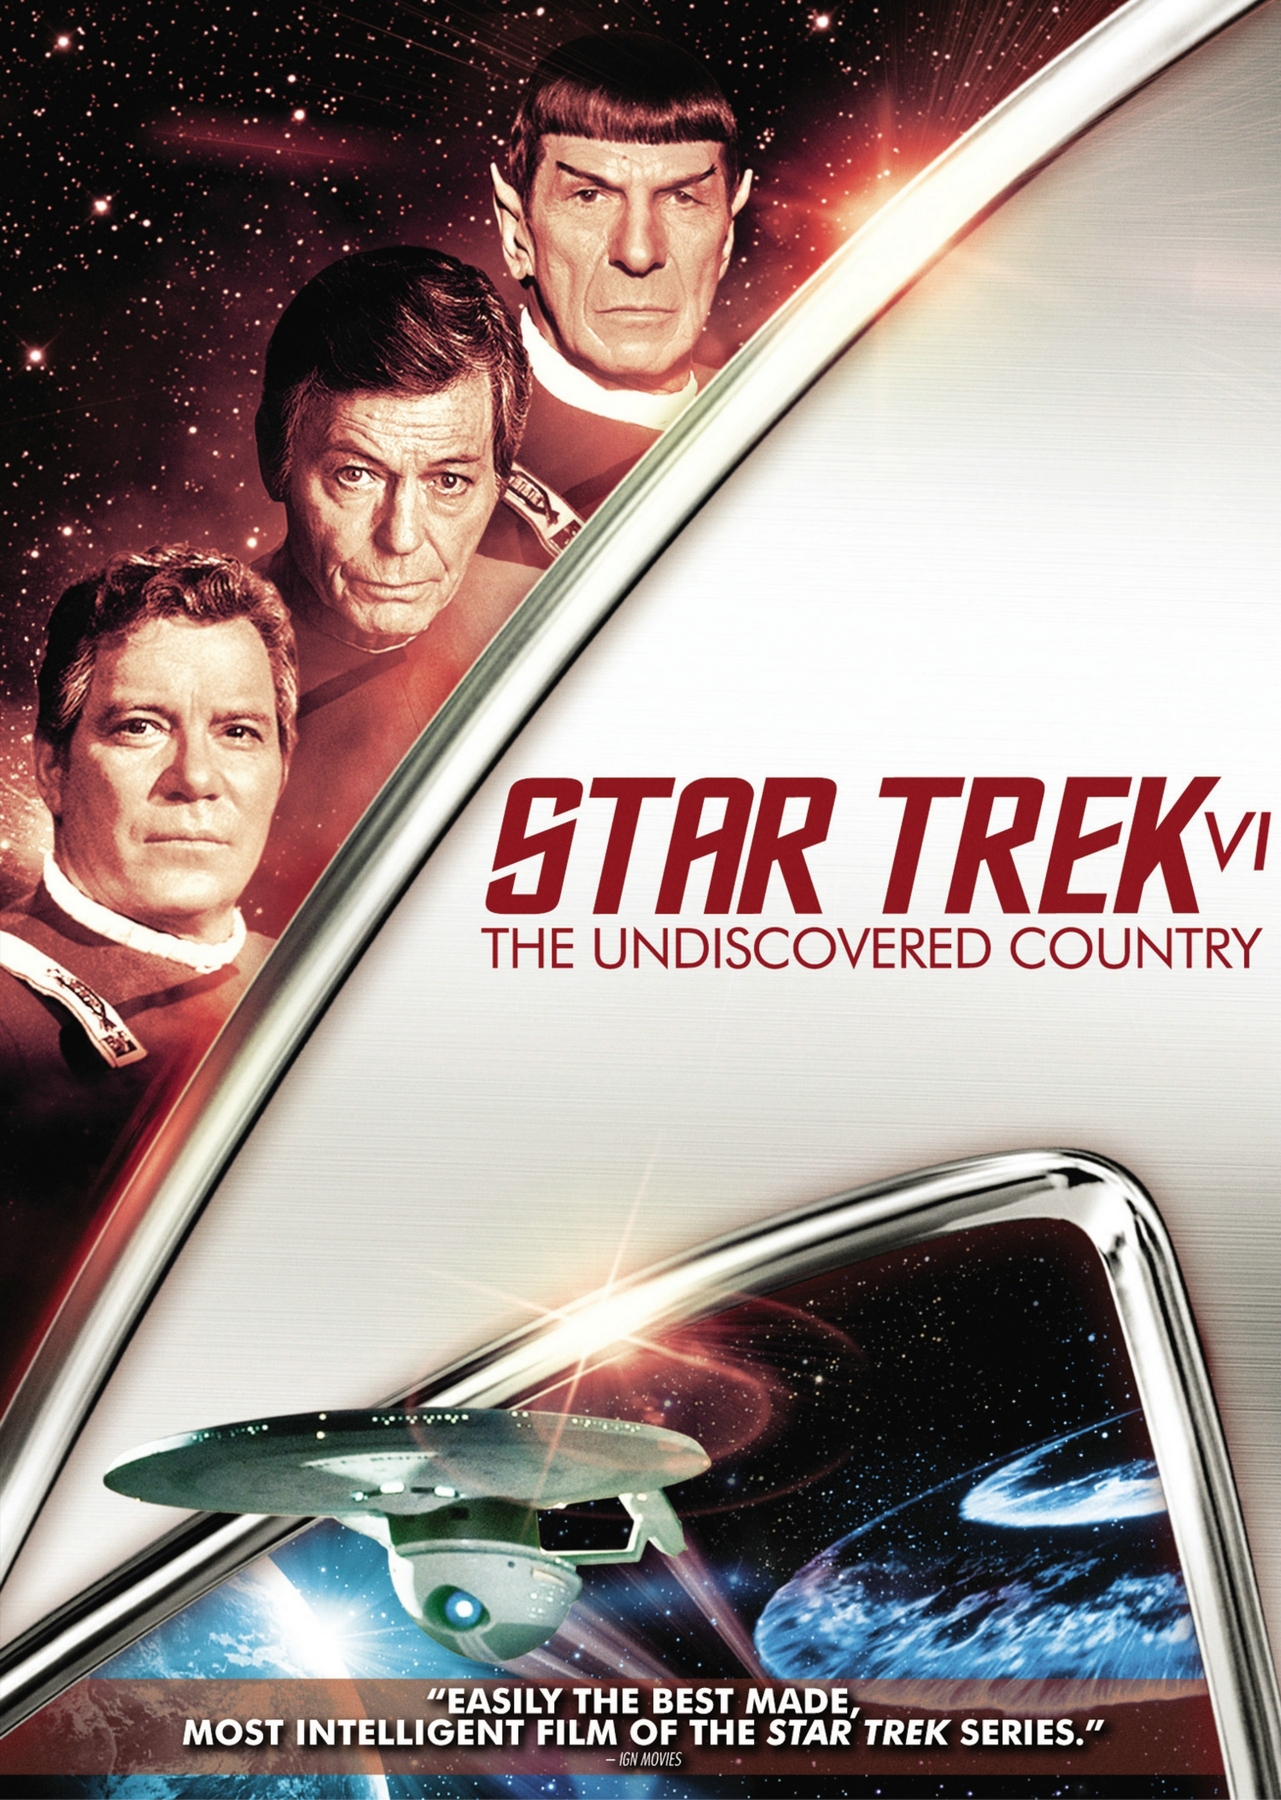 Star Trek Dvd Cover